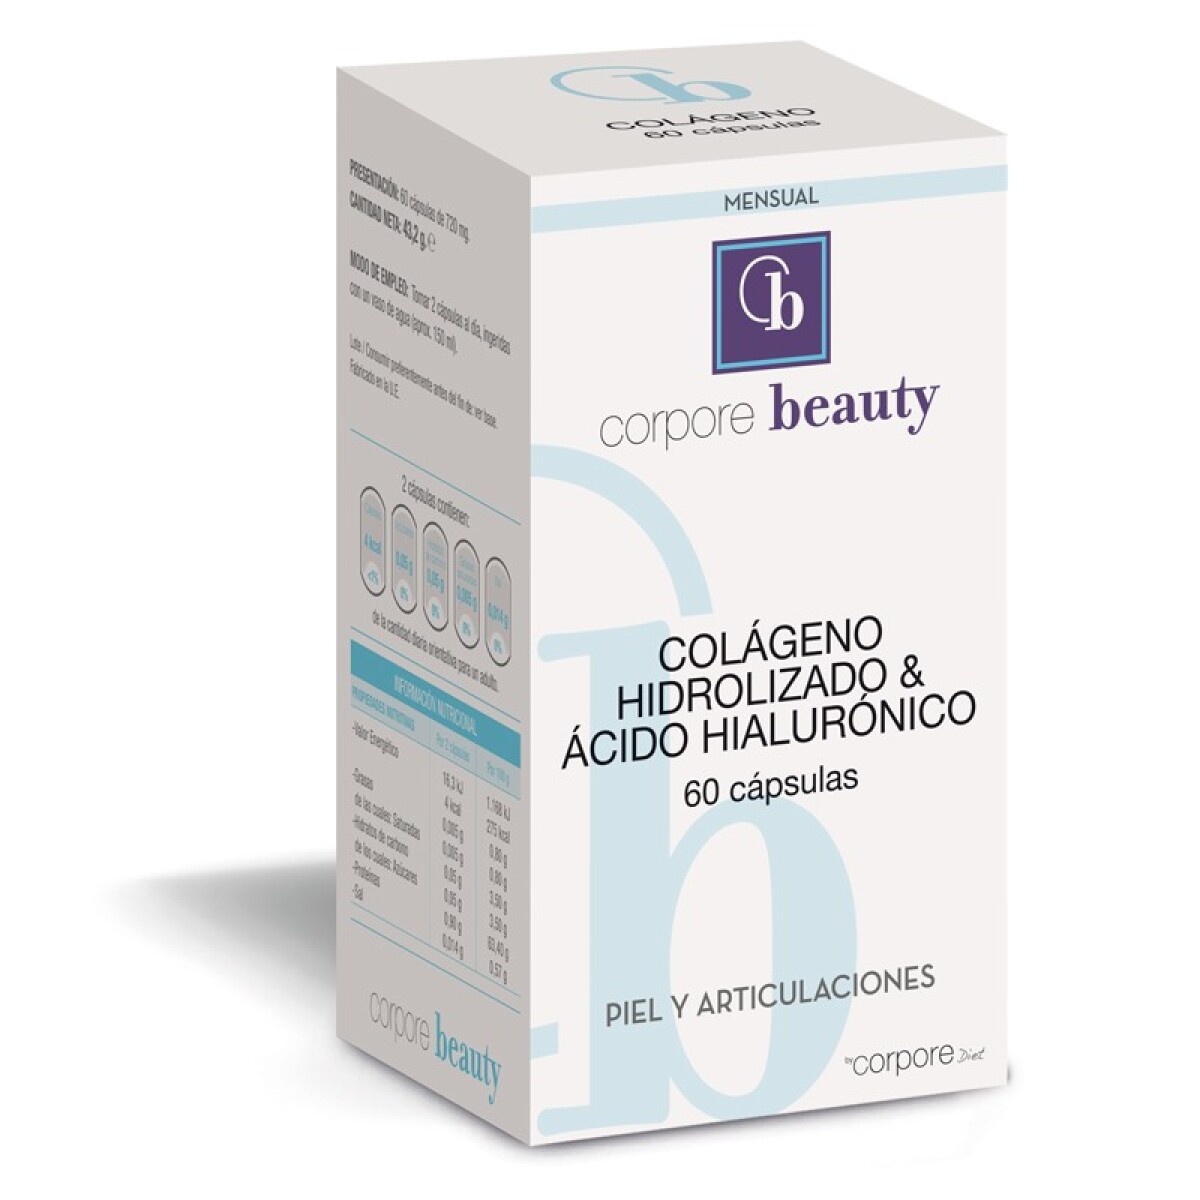 Colágeno hidrolizado & Ácido hialurónico Corpore x 60 caps 